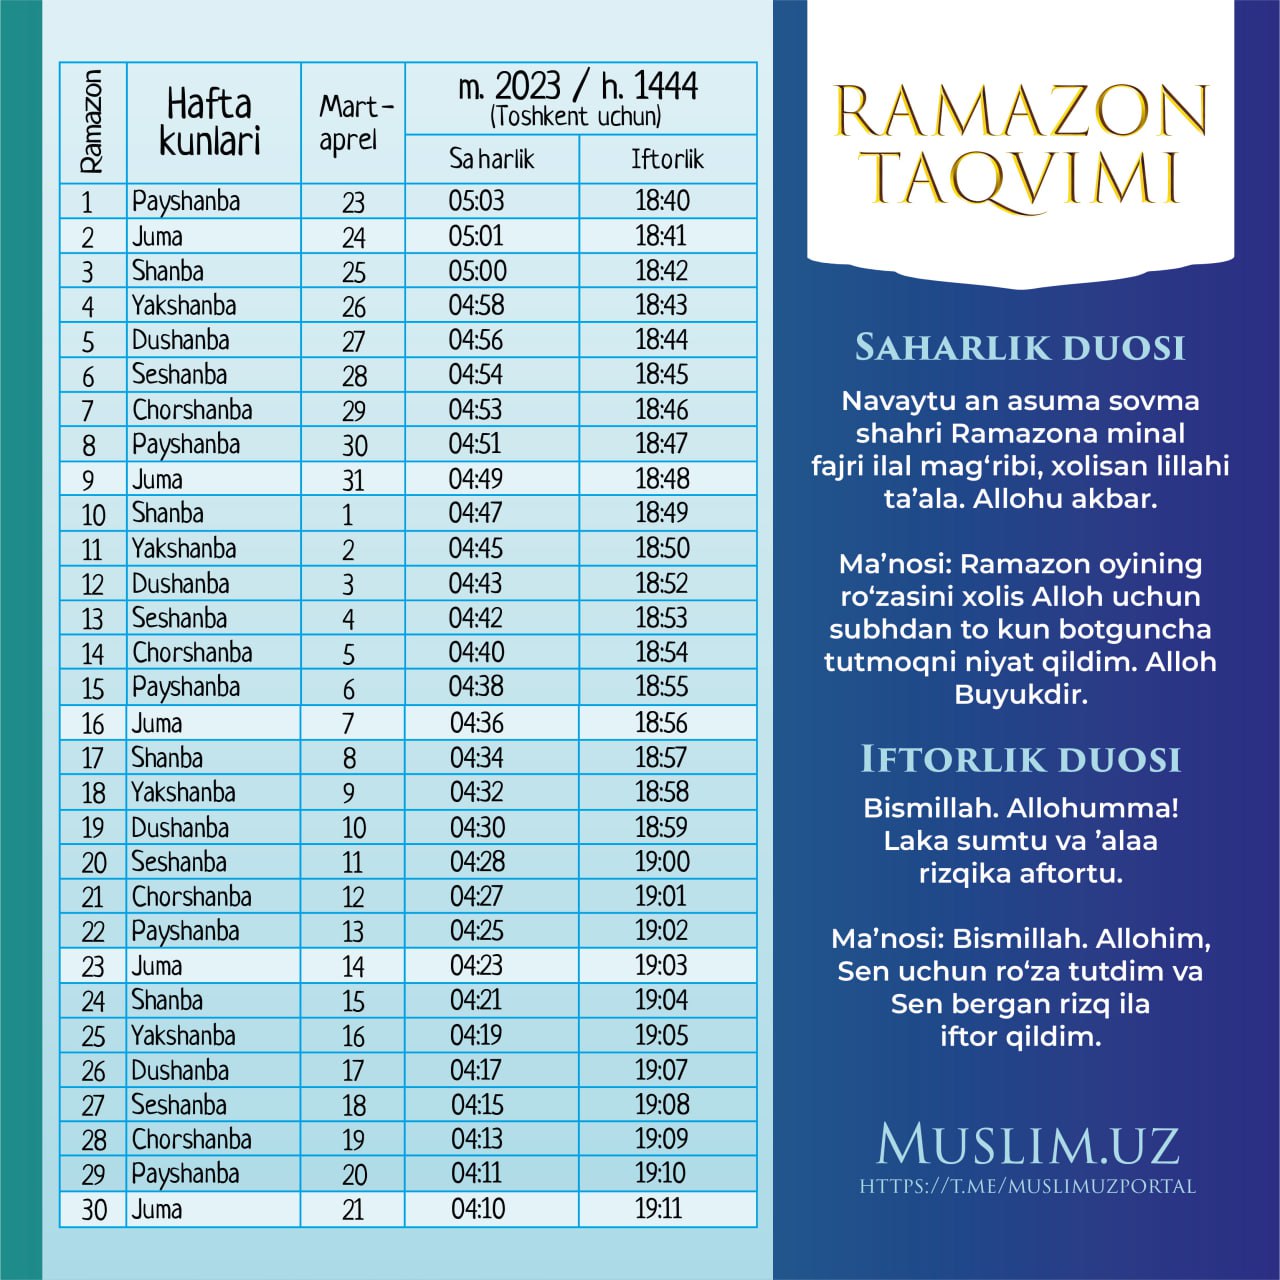 В управлении мусульман опубликовали календарь месяца Рамазан